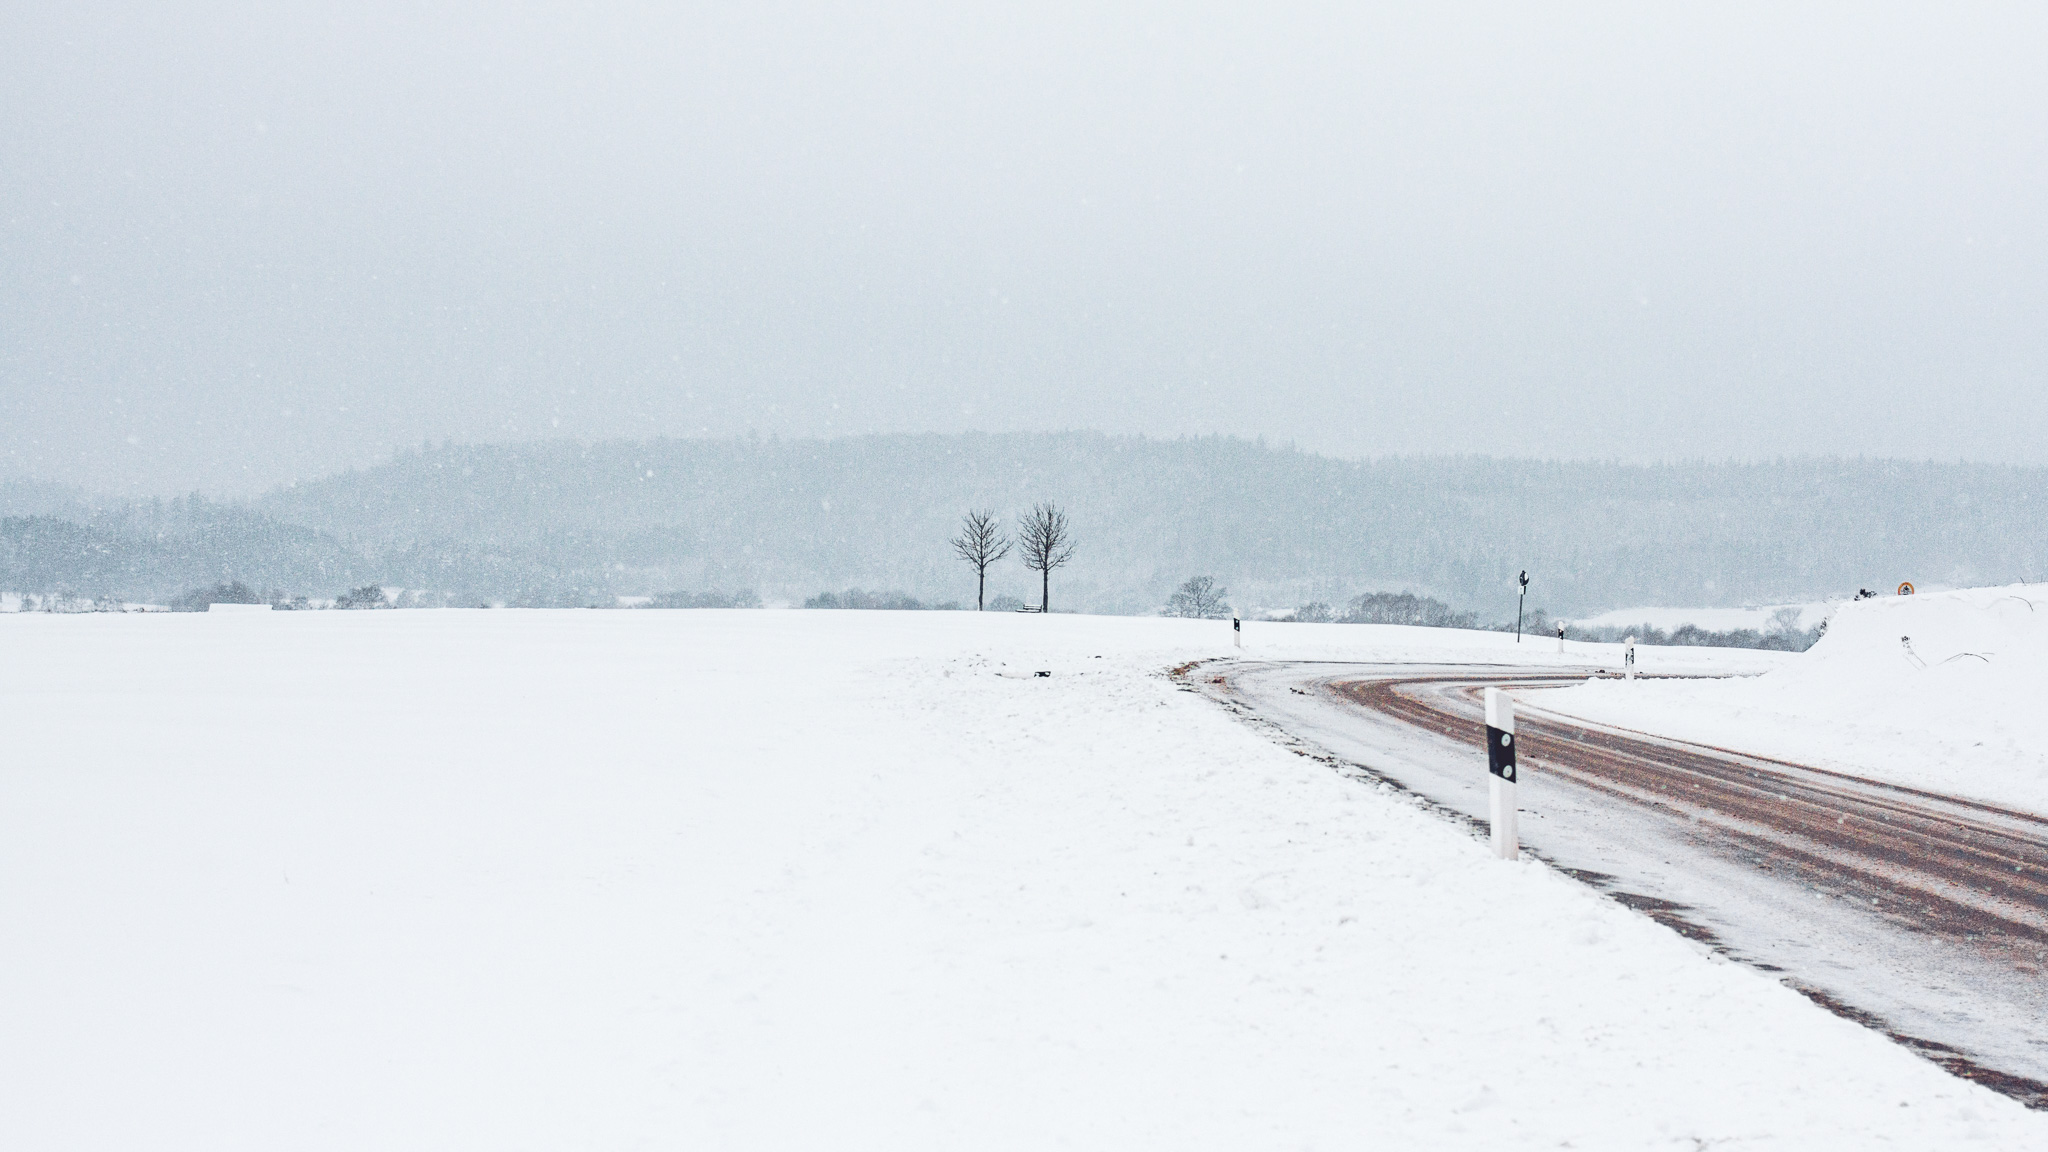 Durch eine weiß verschneite Landschaft mit bewaldeten Hügeln im Hintergrund knickt eine verschneite Straße nach rechts ab, im Mittelpunkt stehen zwei einzelne kleine Bäume auf einem Feld.